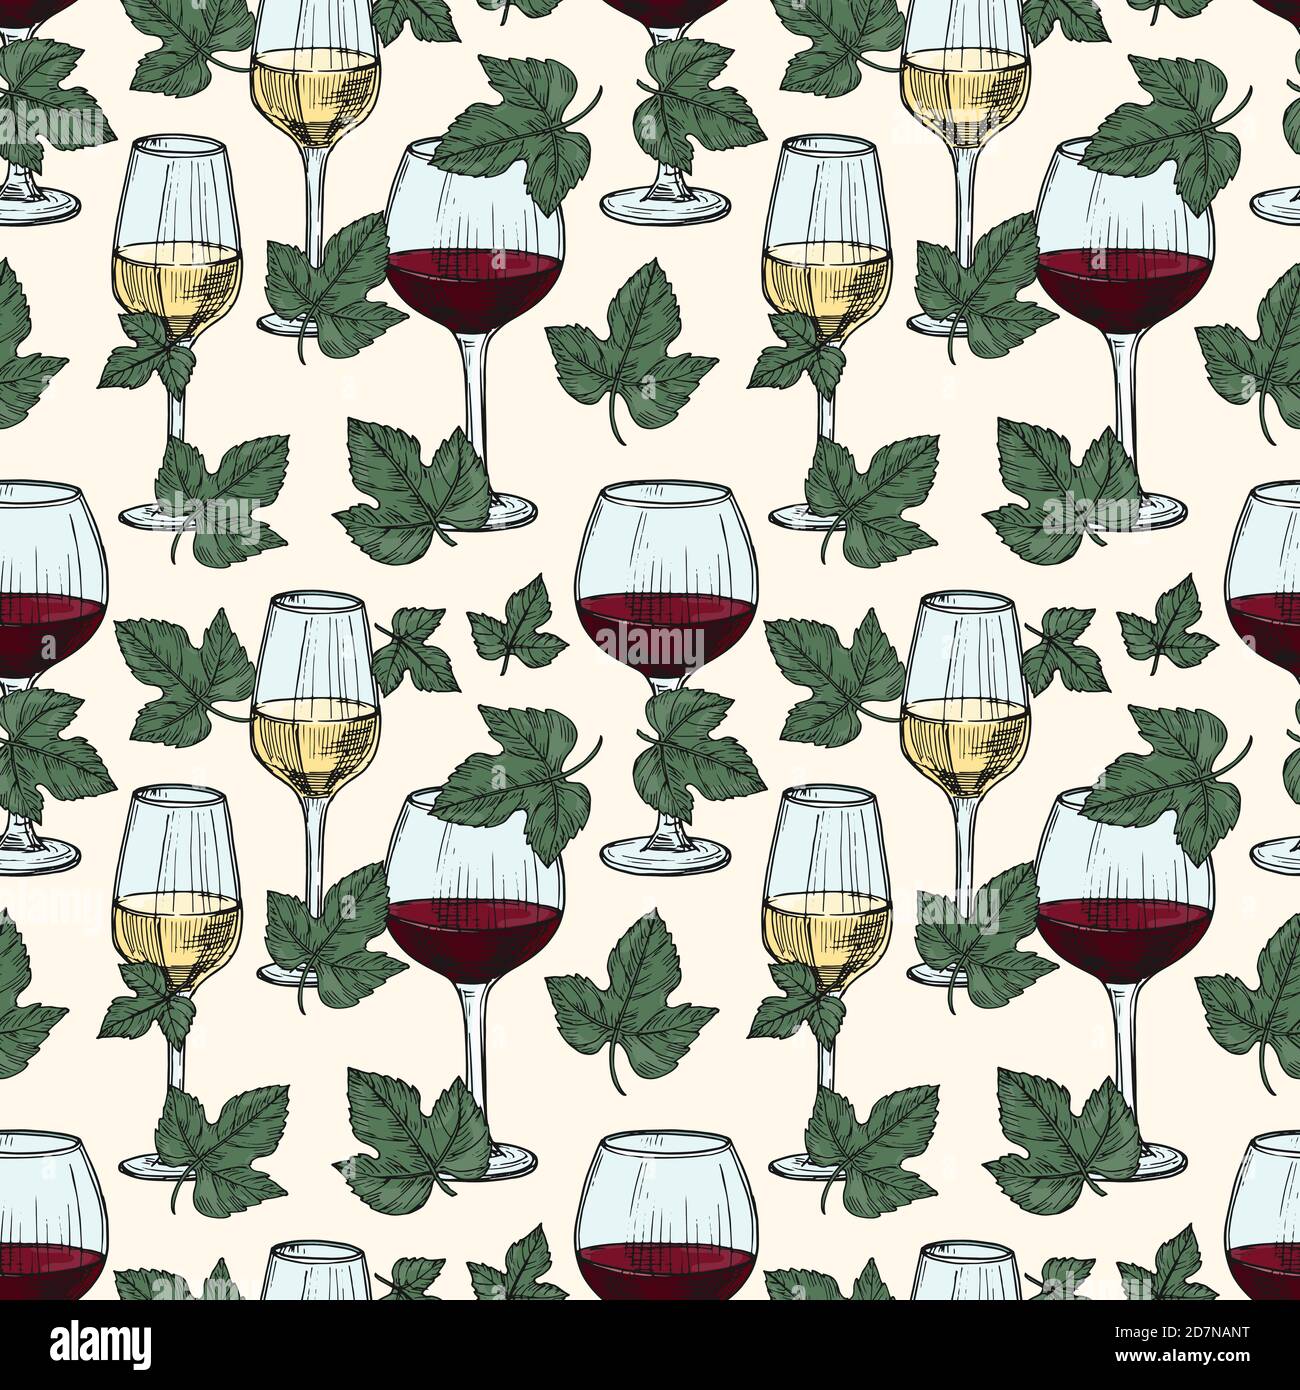 Vektor weiß und Rotwein, Weinrebe Blätter nahtlose Muster. Illustration von Wein Traube Muster Hintergrund Stock Vektor